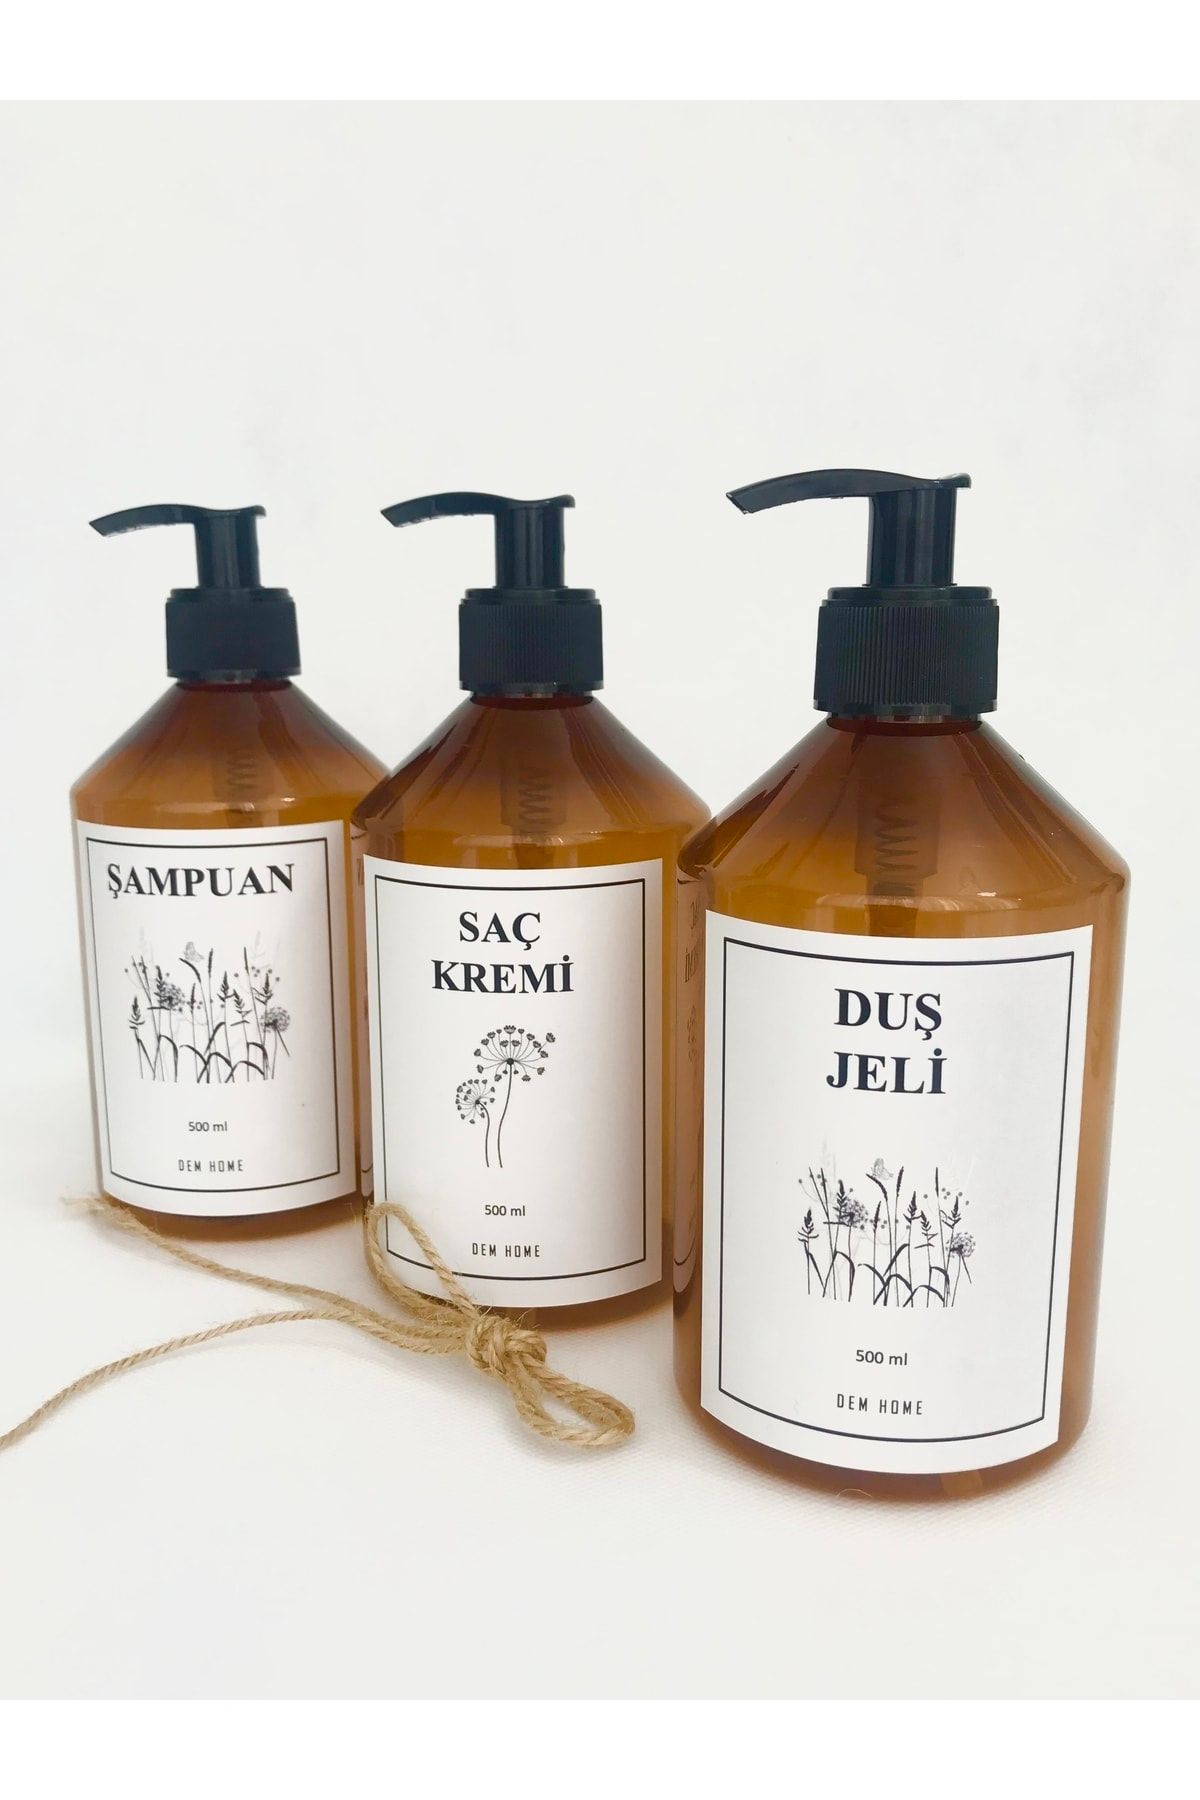 Dem Home Açık Amber Cam Görünümlü Plastik Banyo Şampuan-saç Kremi-duş Jeli 3lü Şişe Seti Pompa Kapaklı 500ml